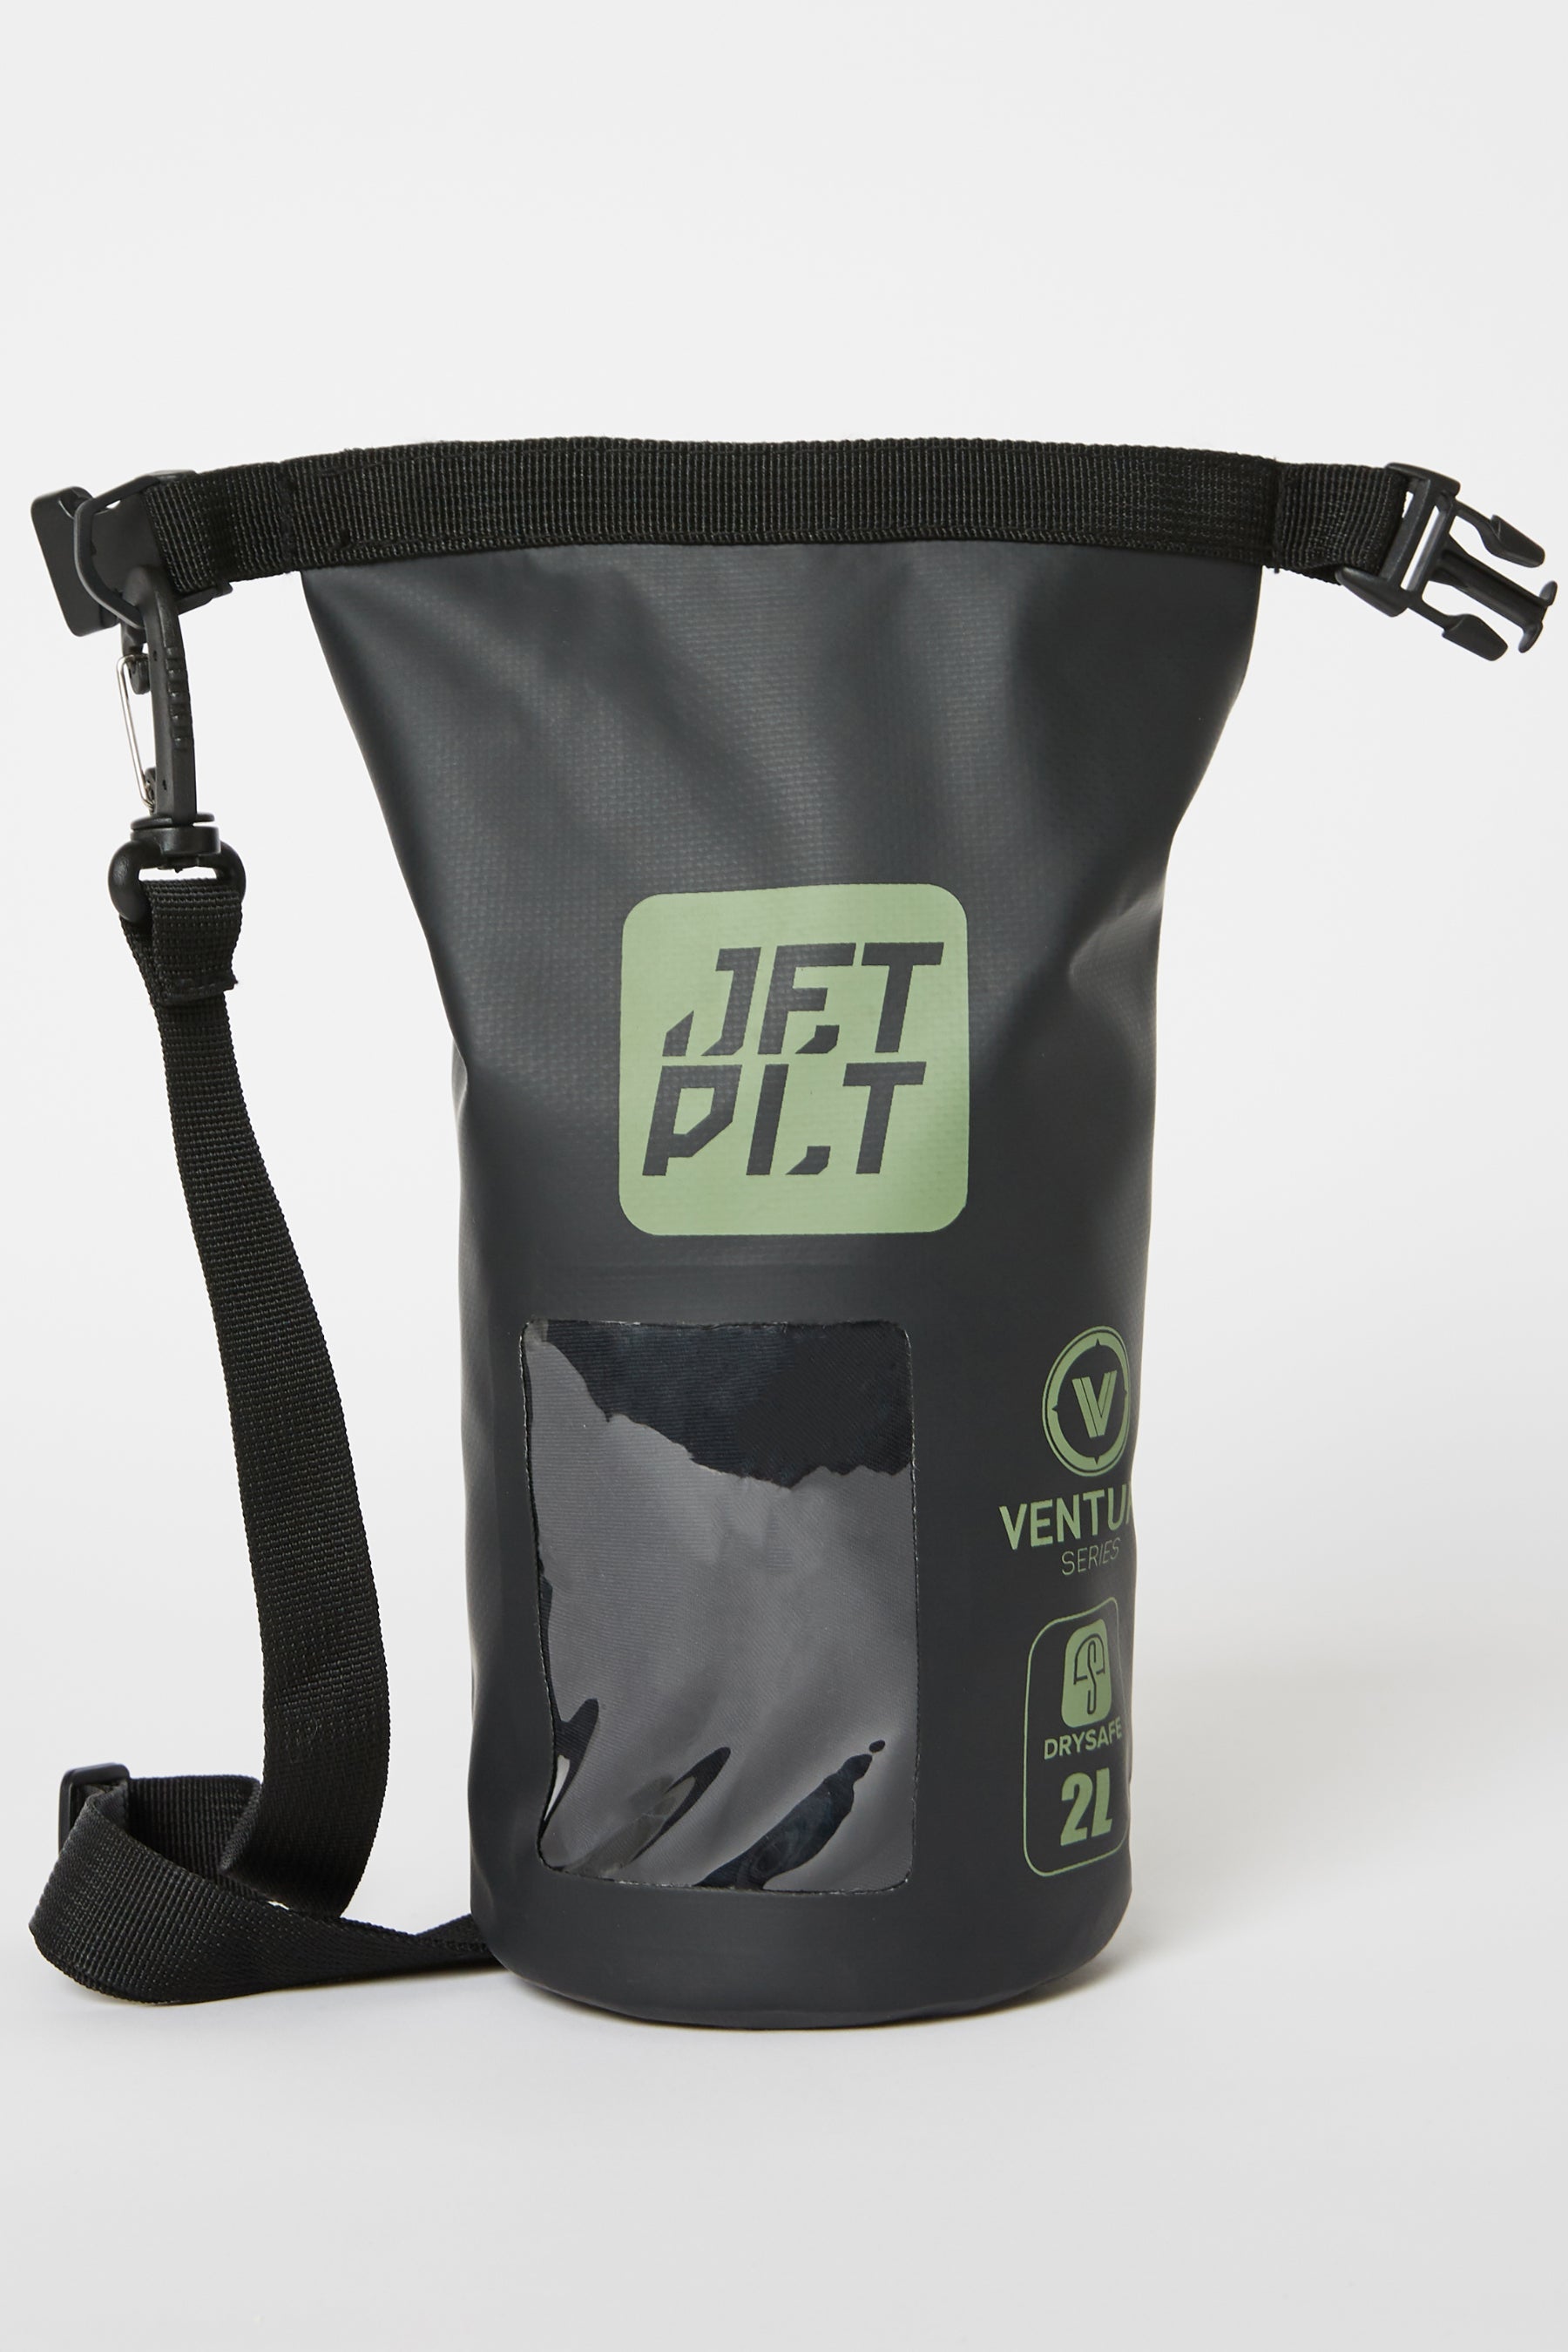 Jetpilot Venture 2l Drysafe Bag - Black